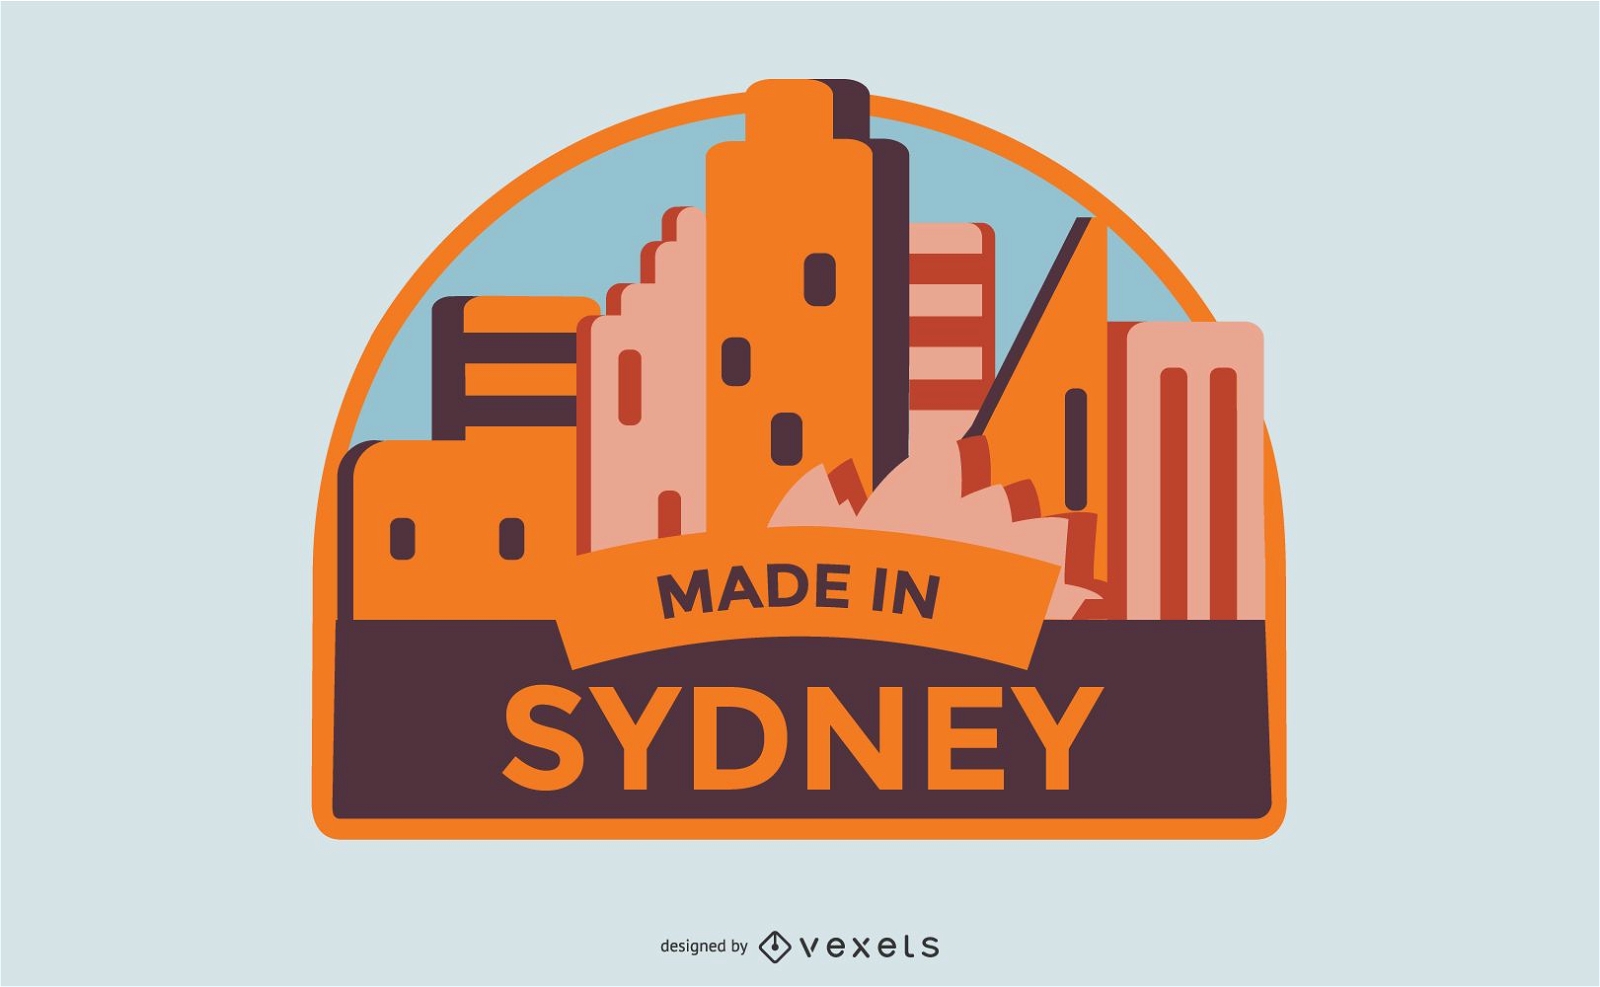 Hecho en diseño de etiqueta de Sydney